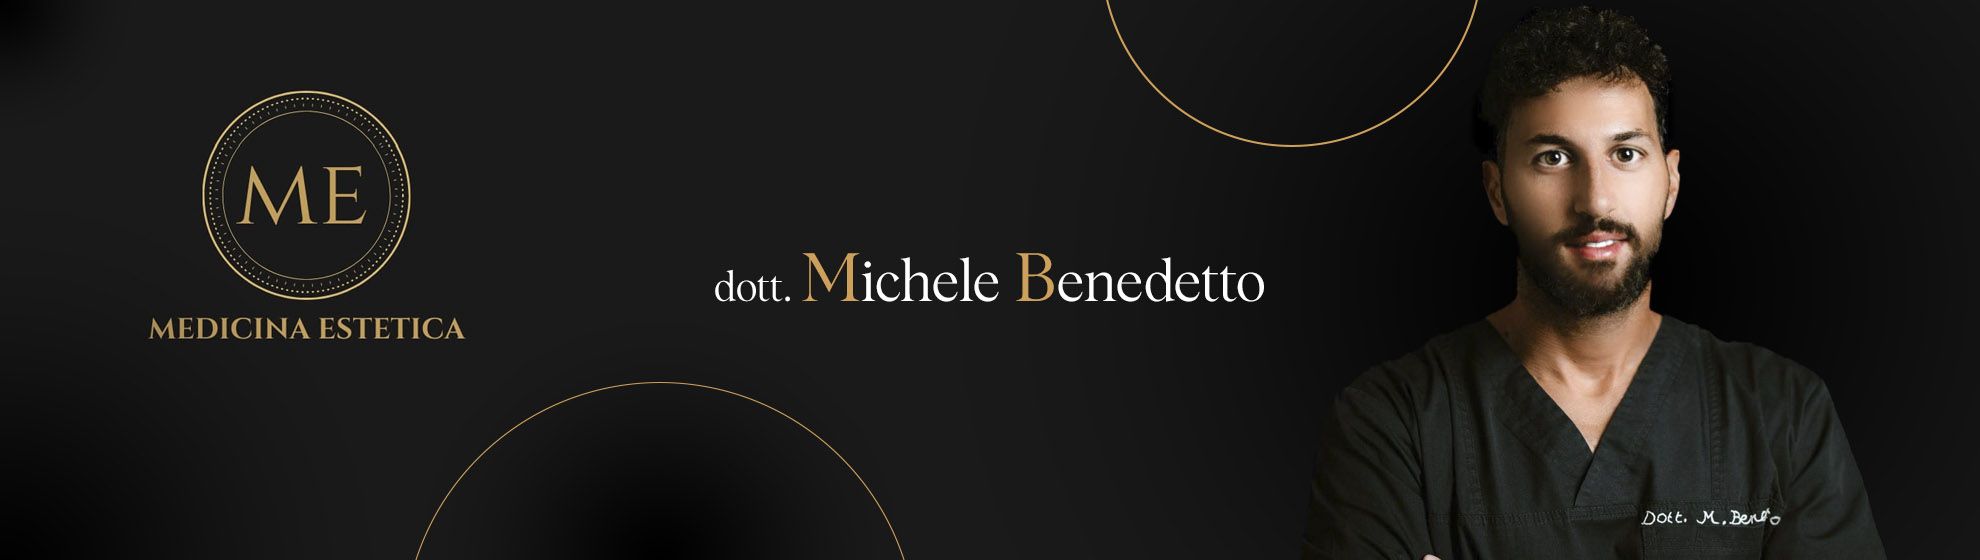 Dott. Michele Benedetto